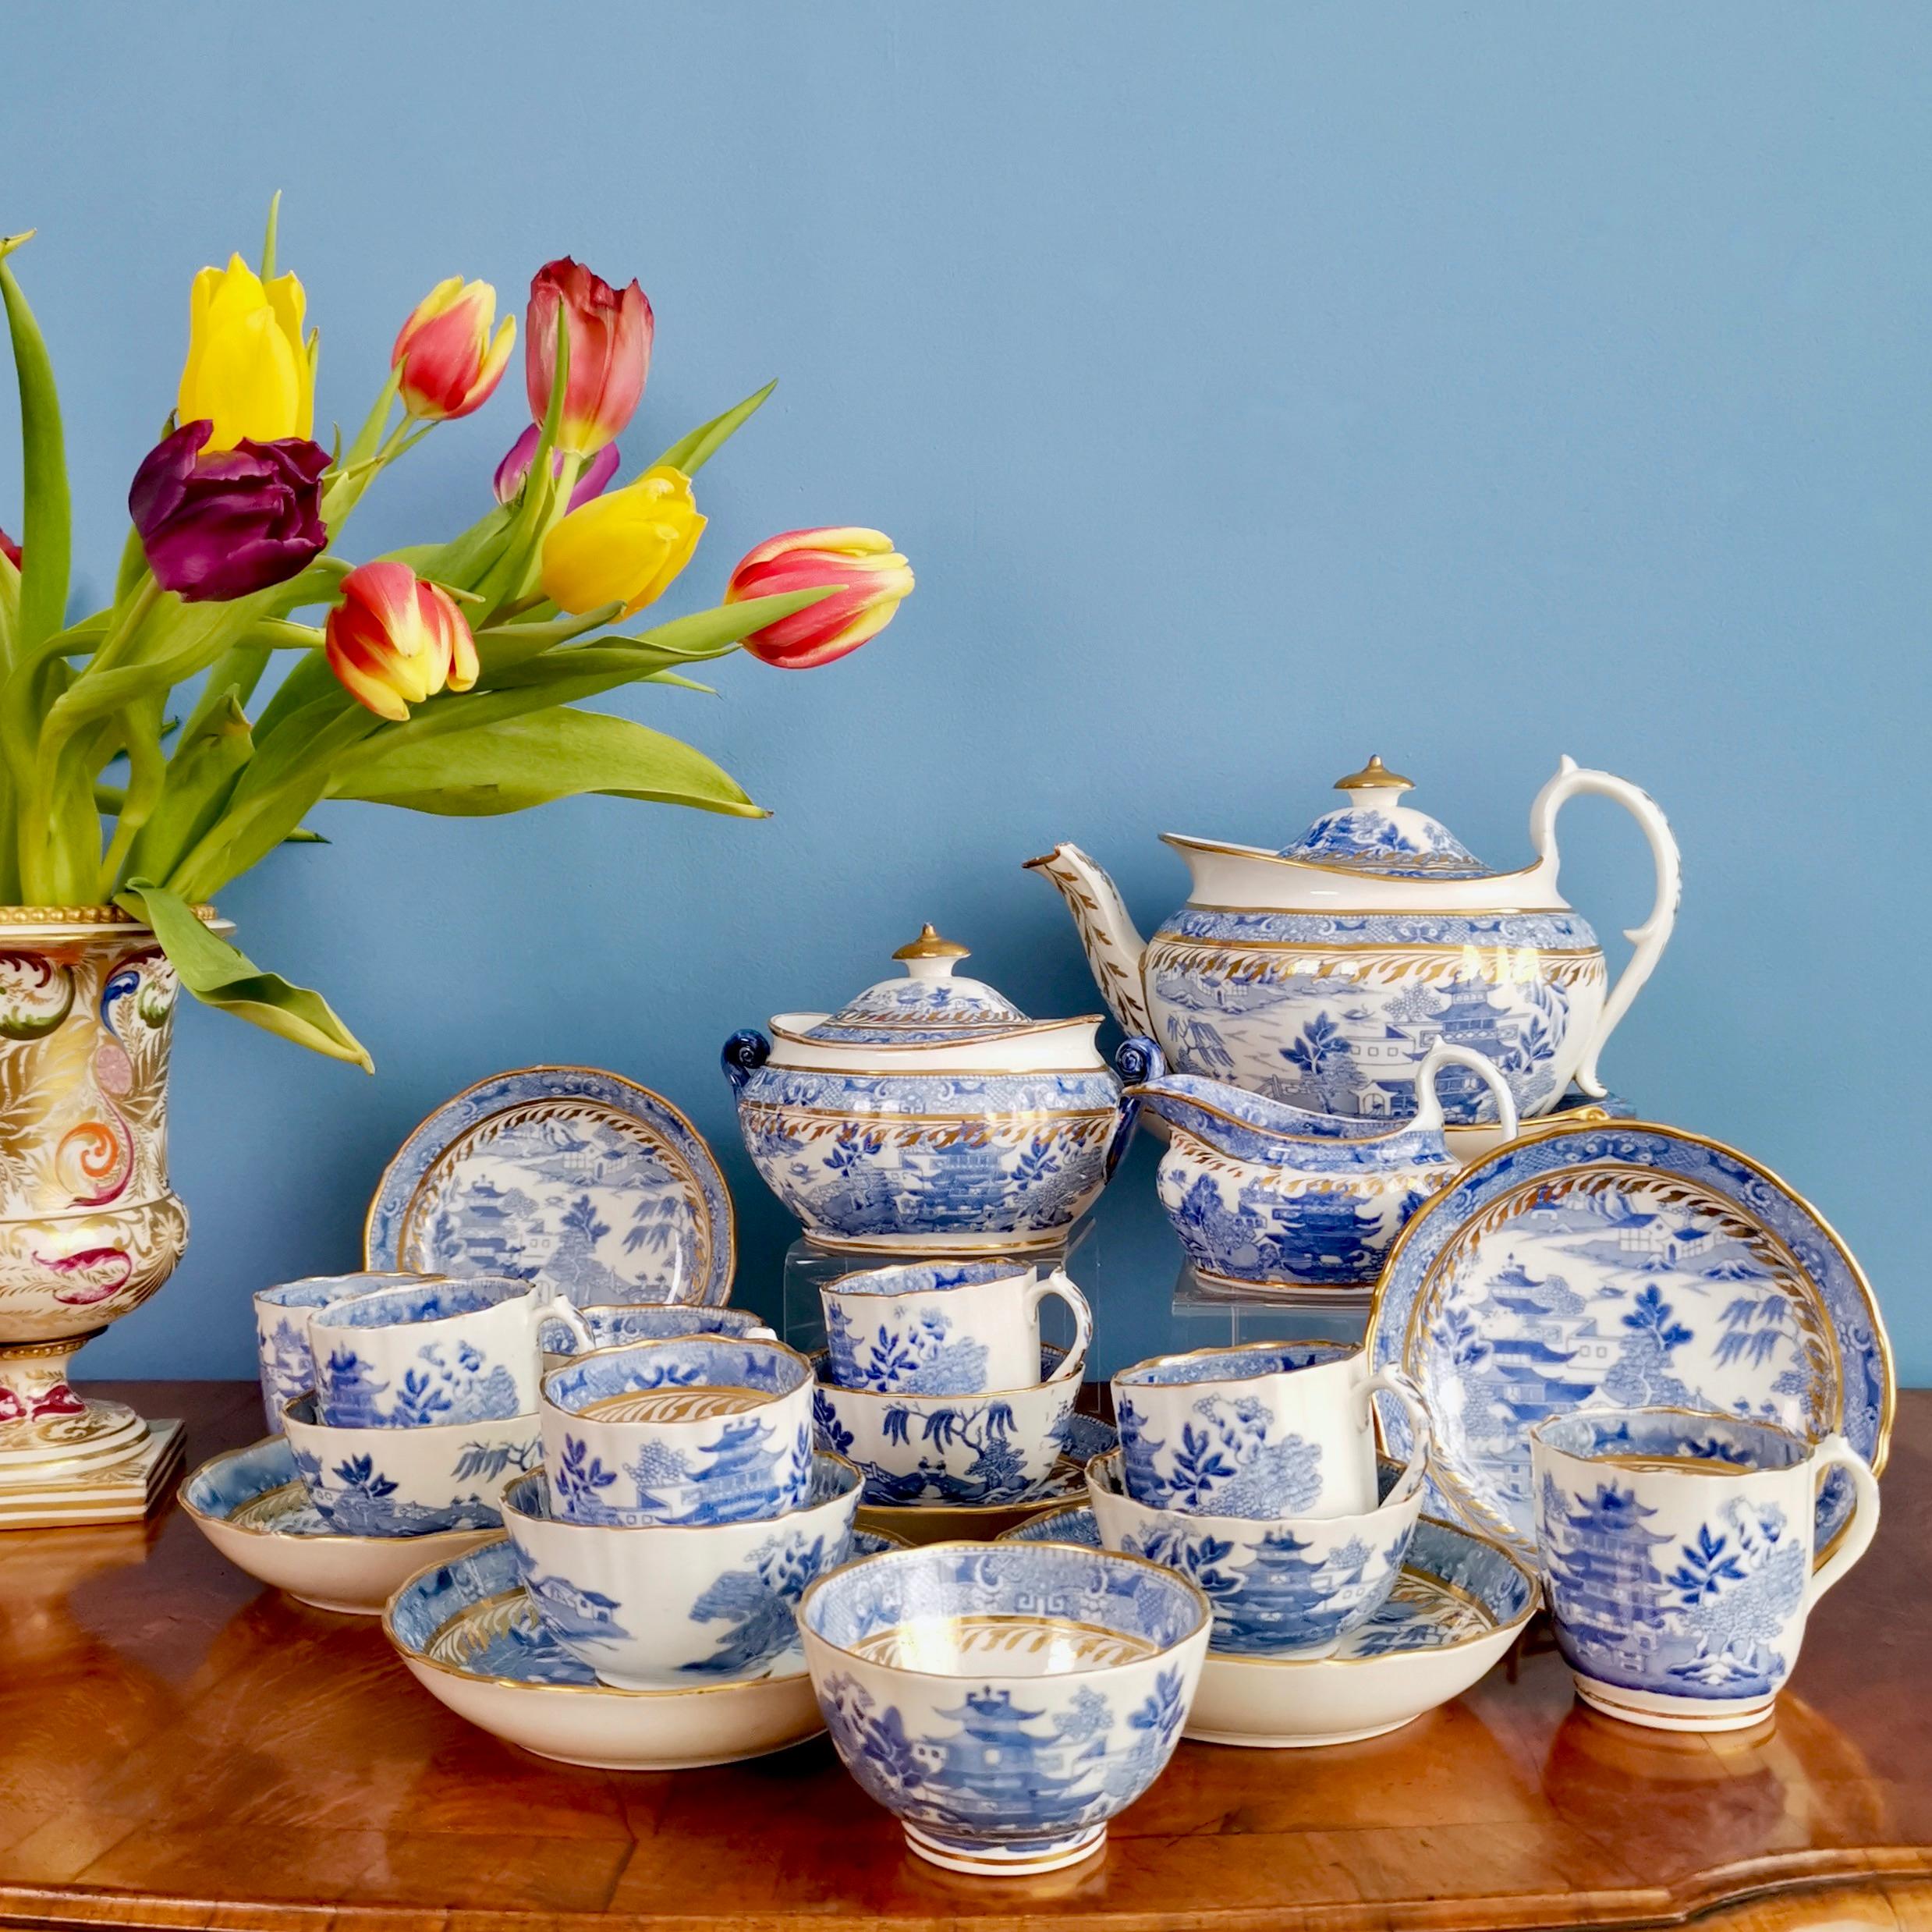 Il s'agit d'un magnifique service à thé complet pour six personnes:: fabriqué par Miles Mason vers 1810:: à l'époque de la Régence. Les articles sont décorés du célèbre motif de la pagode en transfert bleu et blanc et d'un gracieux détail doré. 

Ce